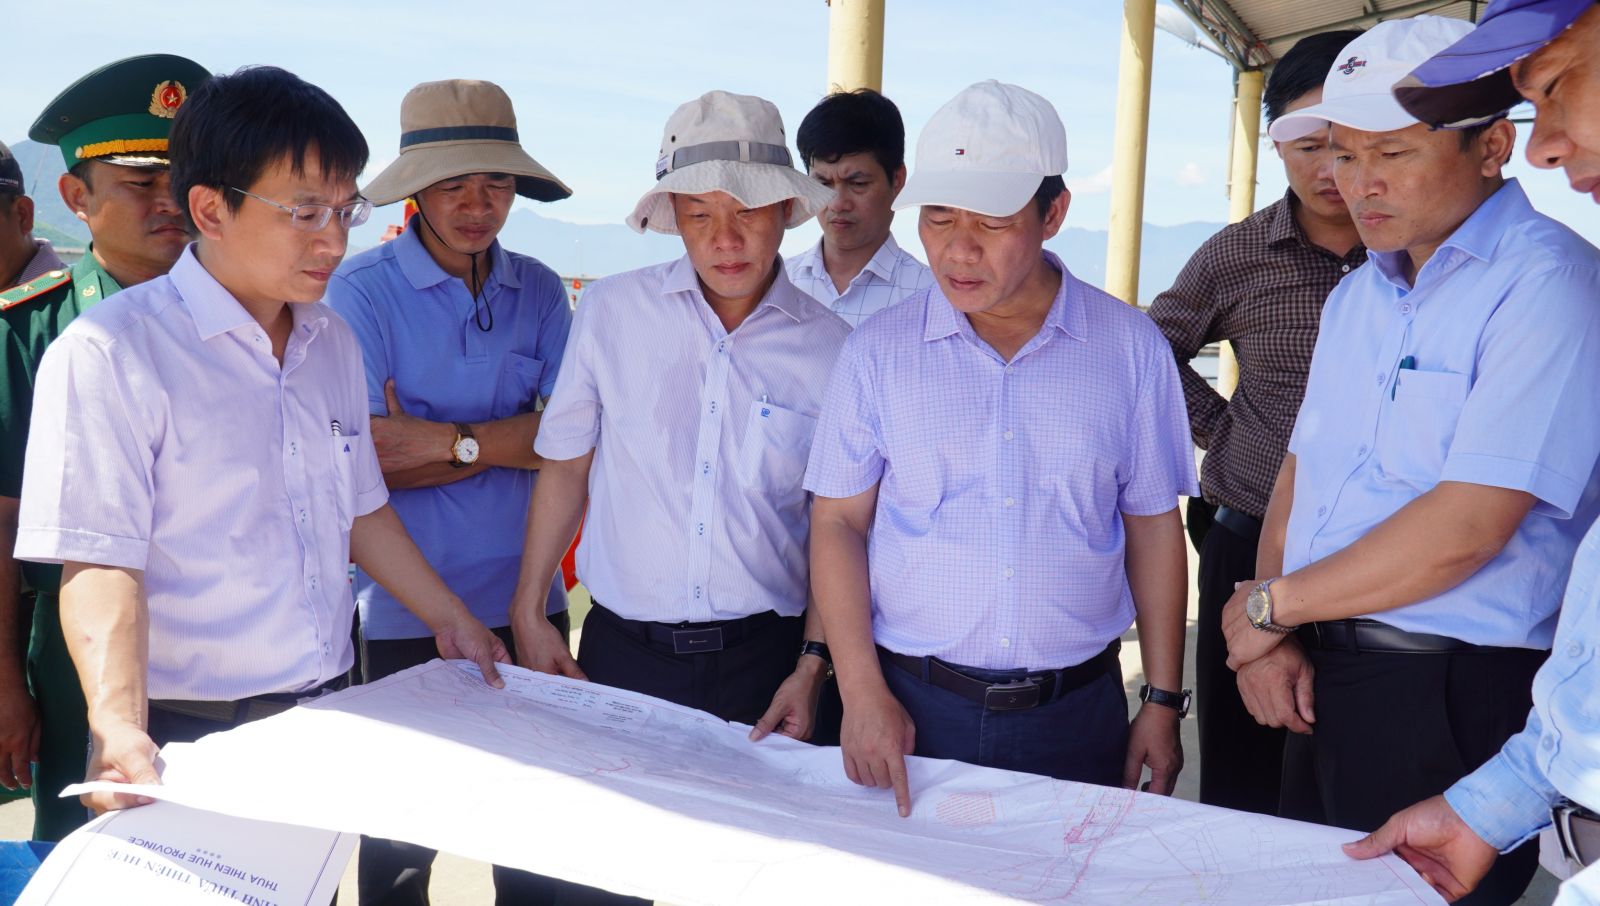 UBND tỉnh Thừa Thiên Huế hợp nhất Ban Quản lý Dự án đầu tư xây dựng công trình dân dụng và công nghiệp tỉnh và Ban Quản lý khu vực phát triển đô thị tỉnh trực thuộc UBND tỉnh Thừa Thiên Huế.